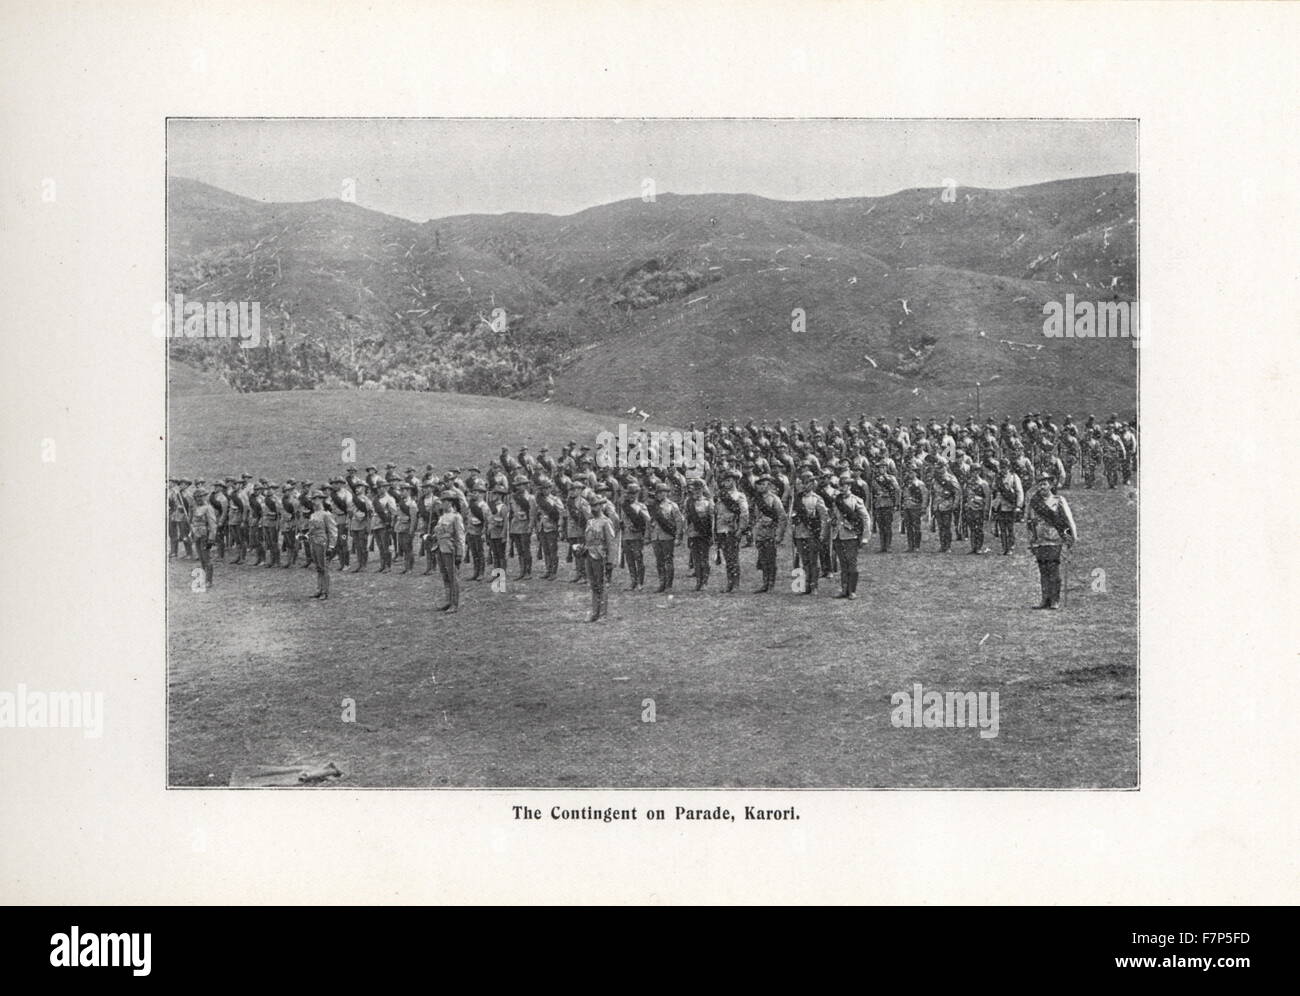 Photographie de la fonction de Parade, Karori. Datée 1899 Banque D'Images